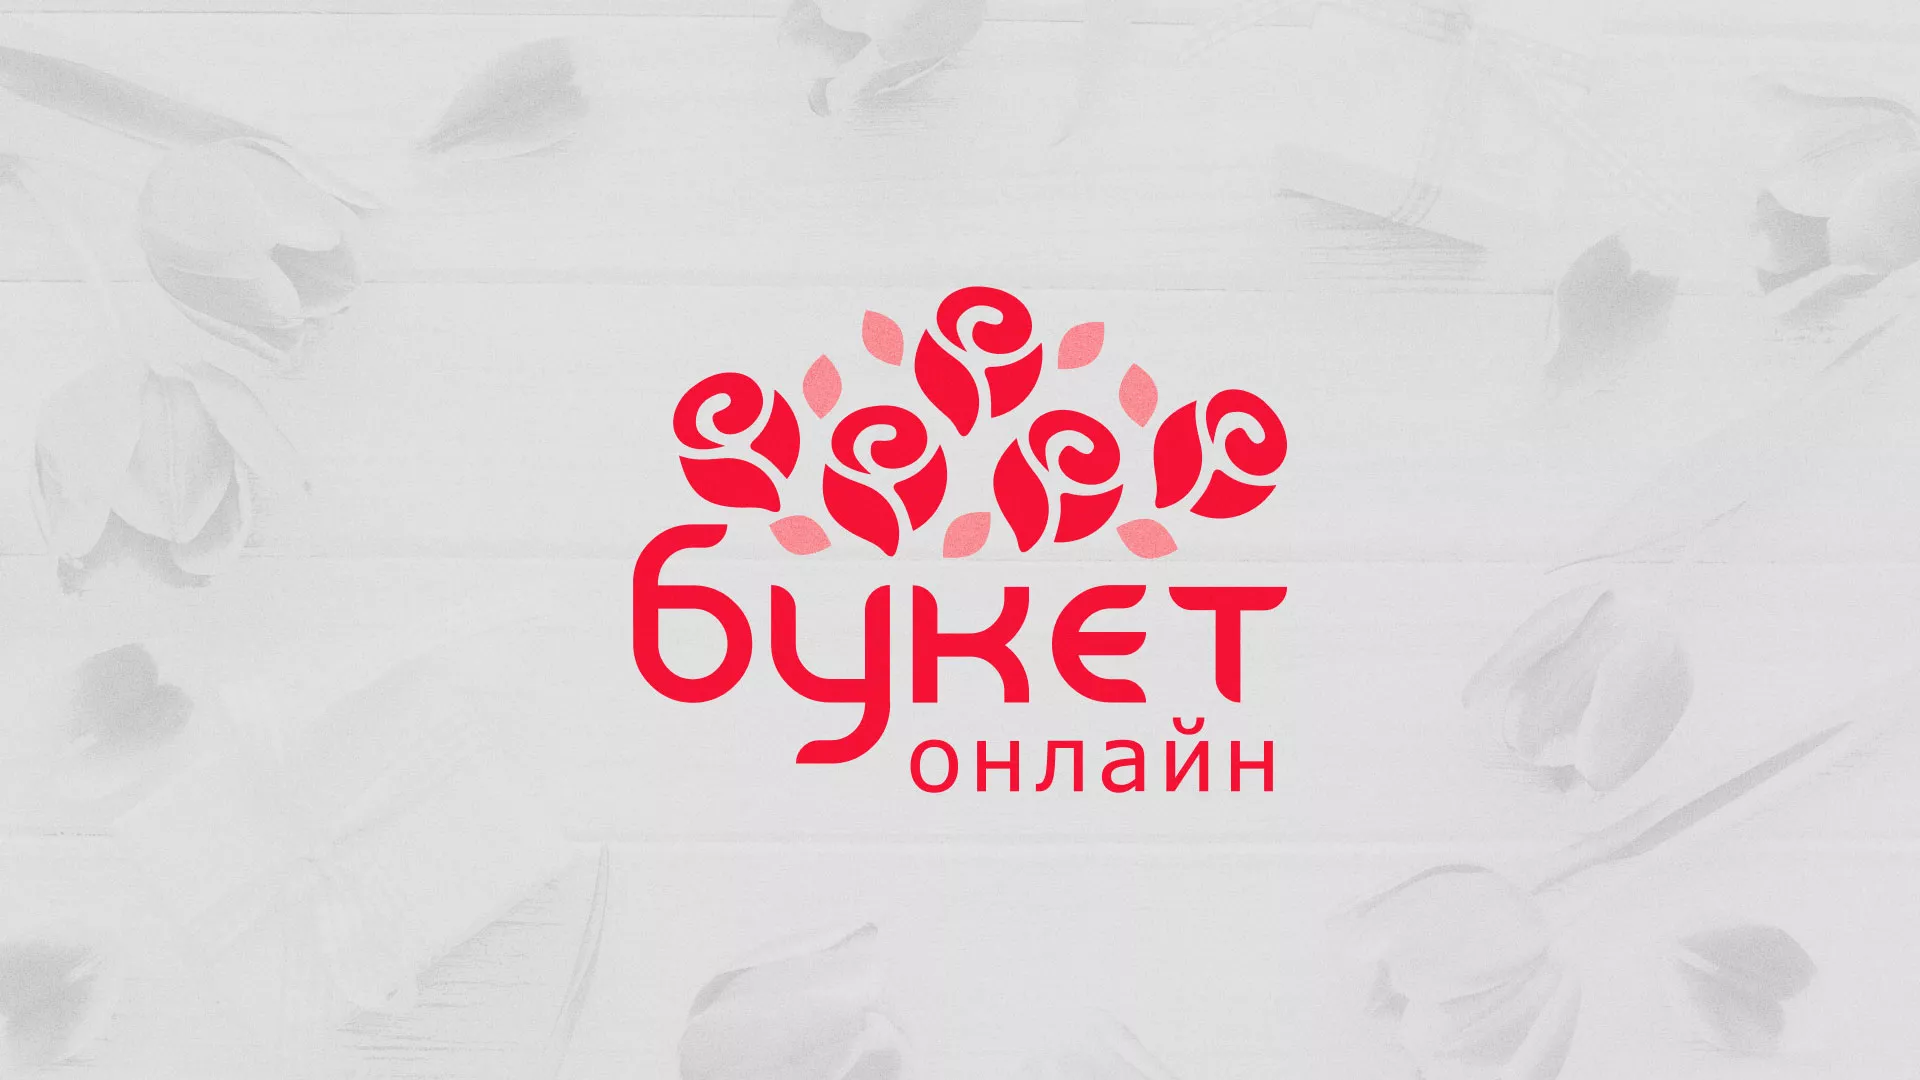 Создание интернет-магазина «Букет-онлайн» по цветам в Выксе